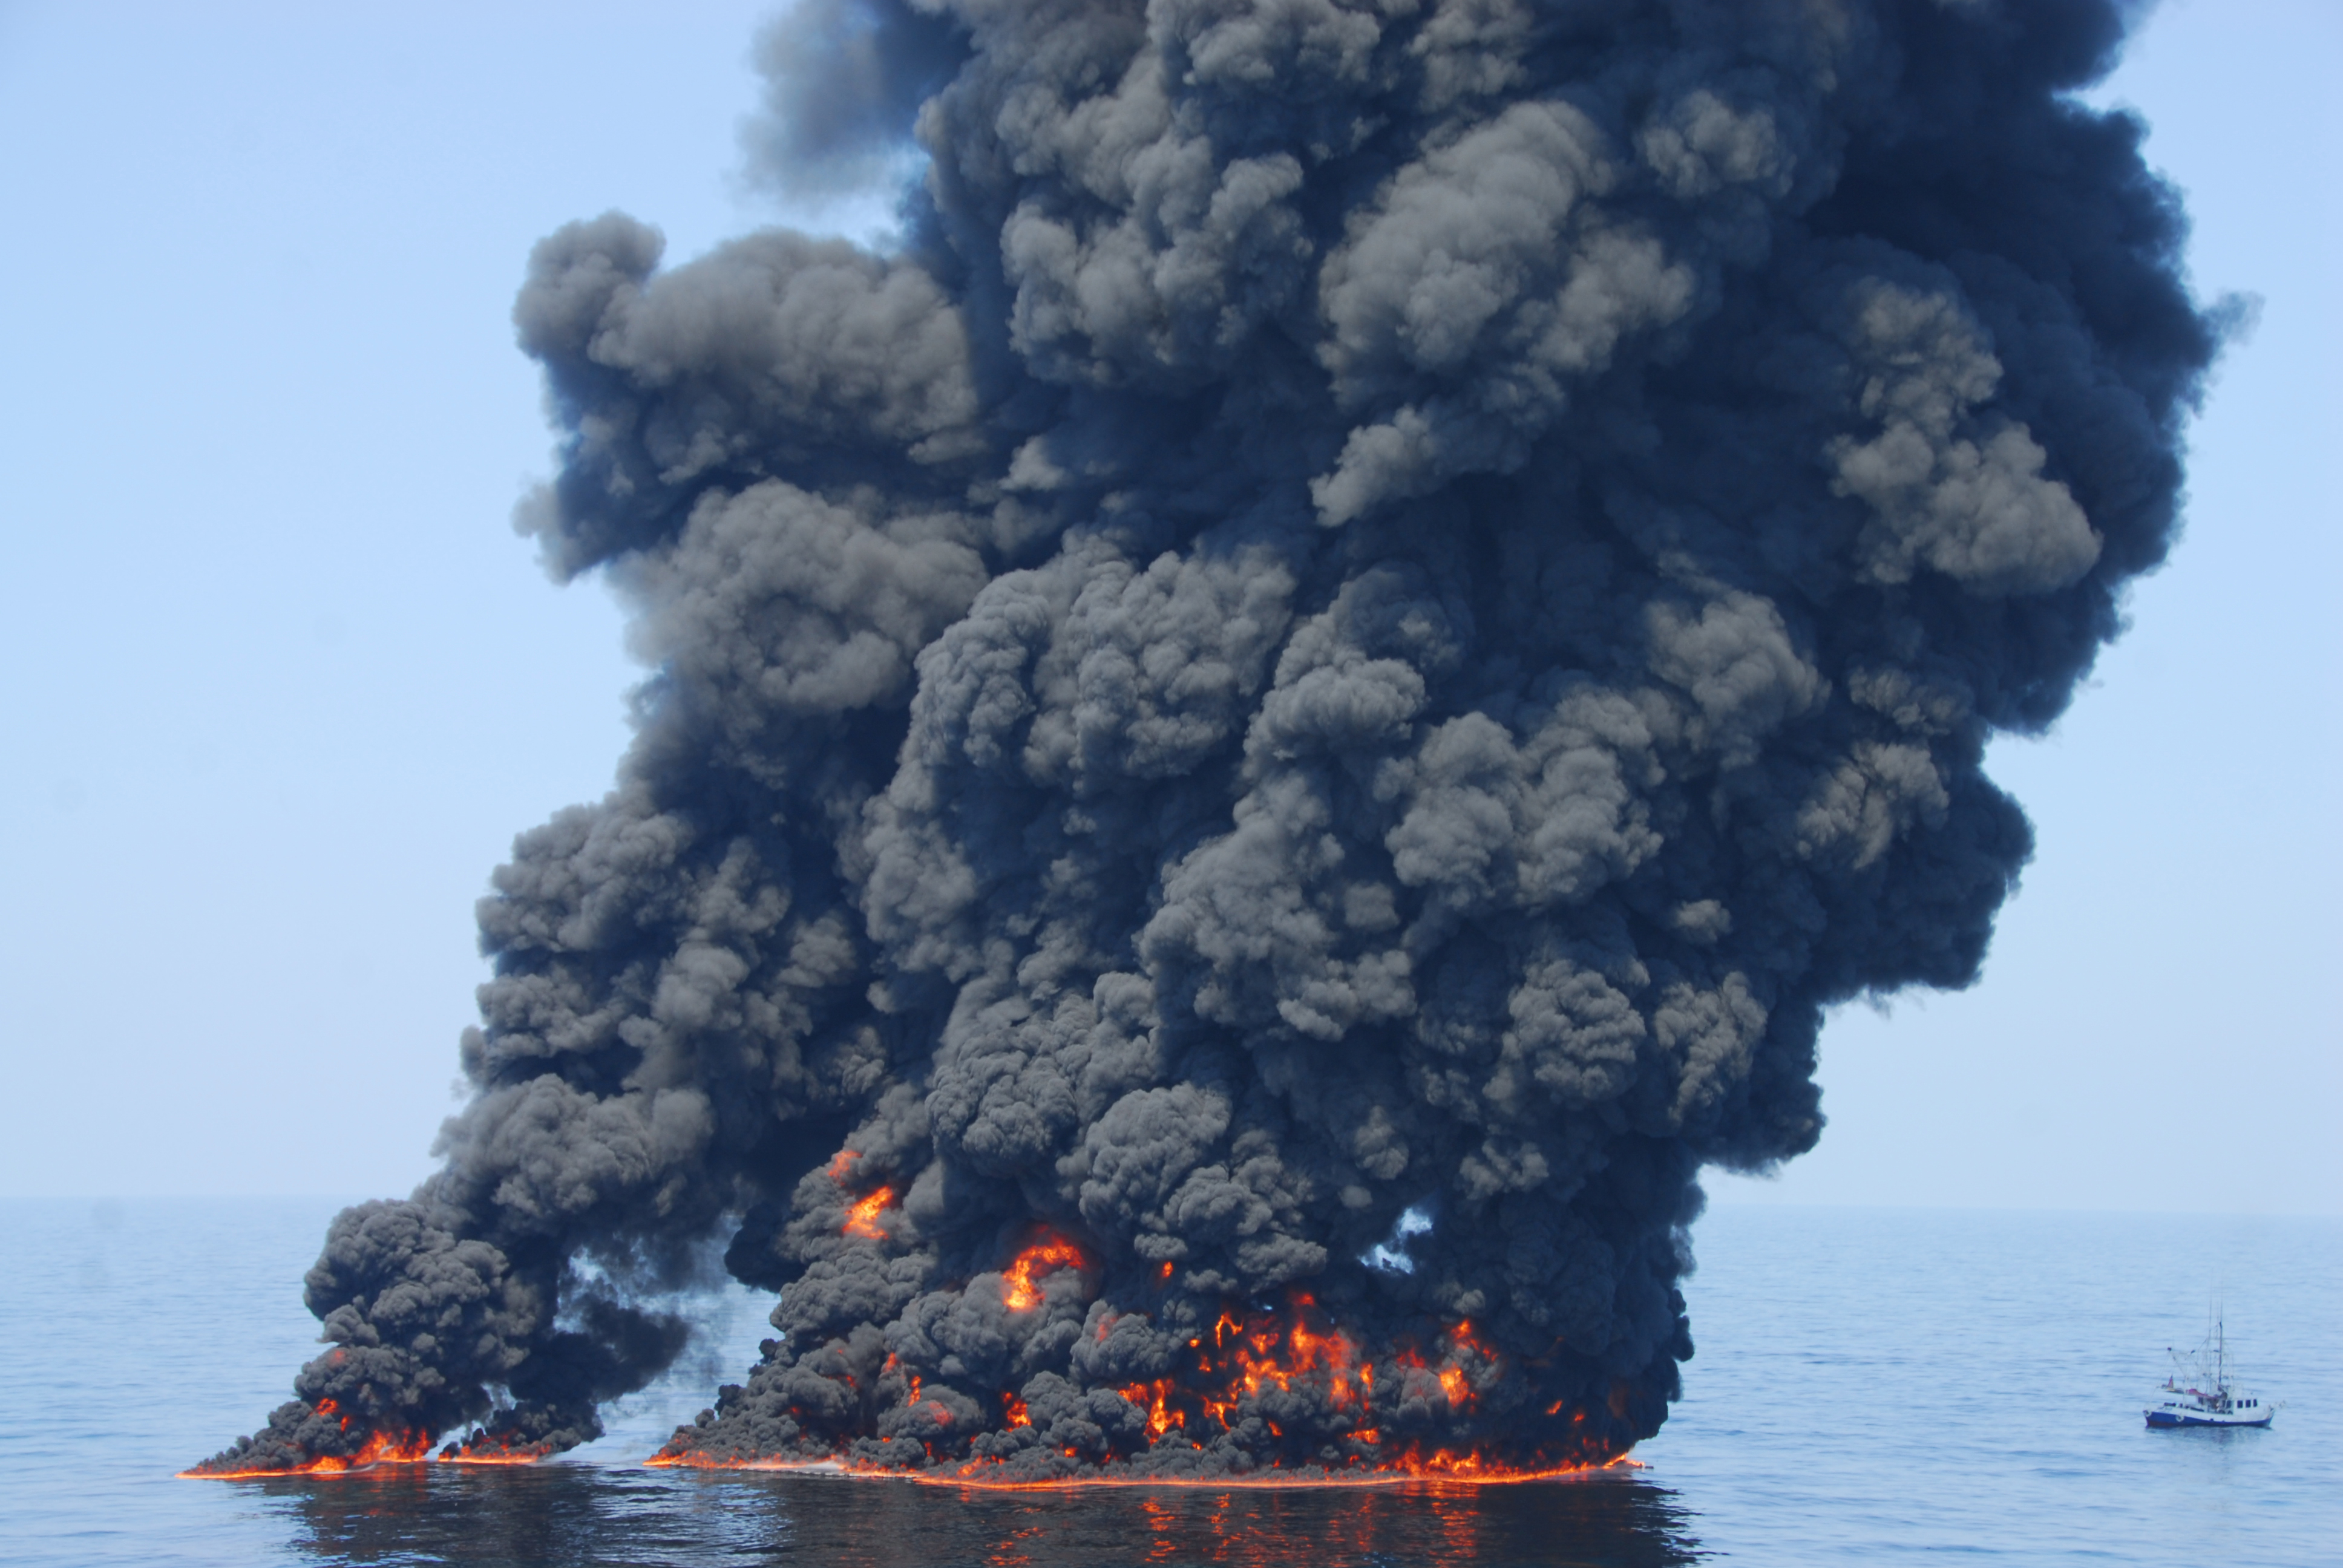 Сероводород сожгли. Взрыв нефтяной платформы Deepwater Horizon - 20 апреля 2010 года. Deepwater Horizon разлив нефти. Разлив нефти в мексиканском заливе 2010. Разлив нефти BP Deepwater Horizon.